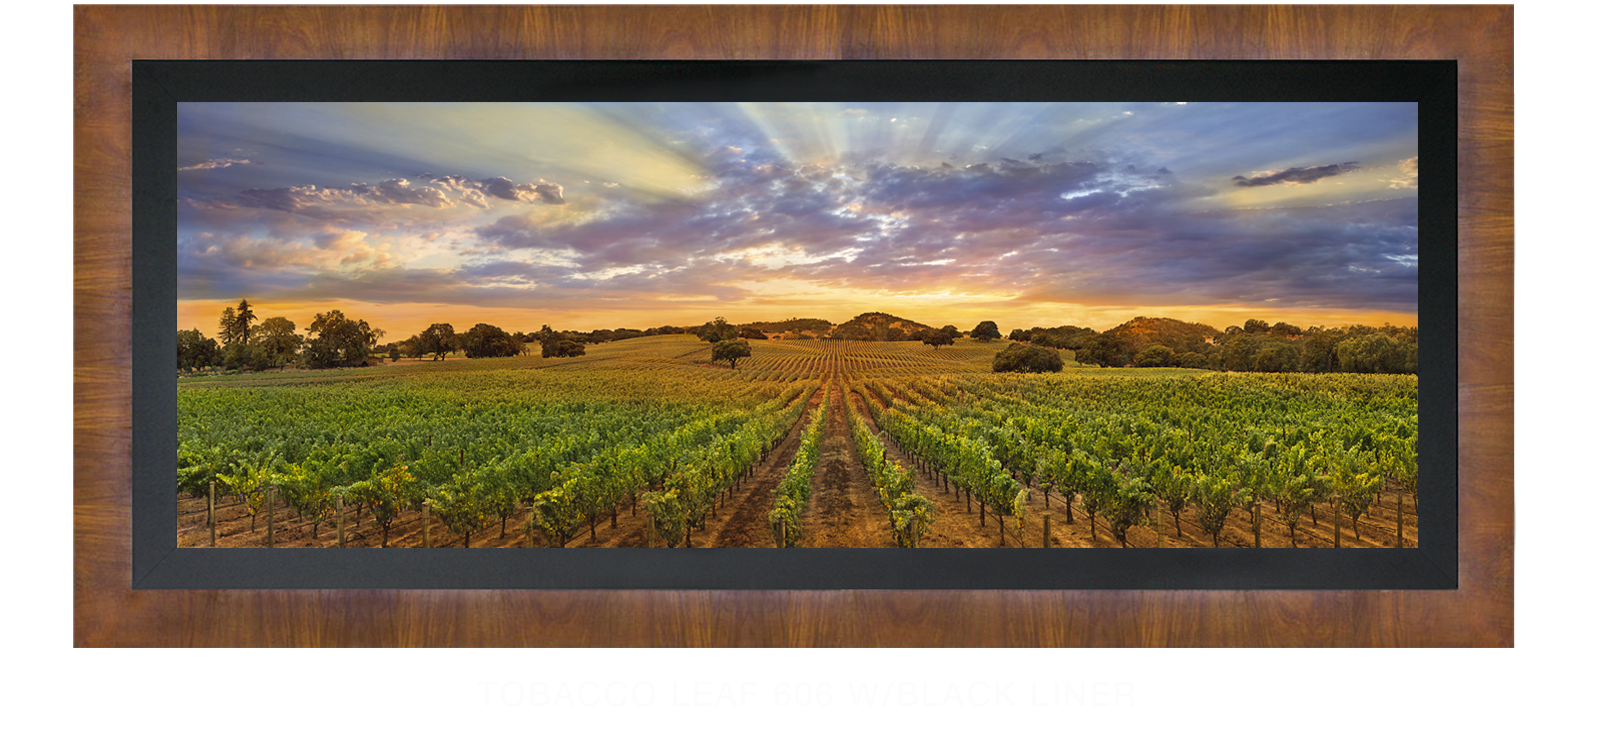 23NAPA LANDSCAPE Tobacco Leaf 606 w_Blk Liner T